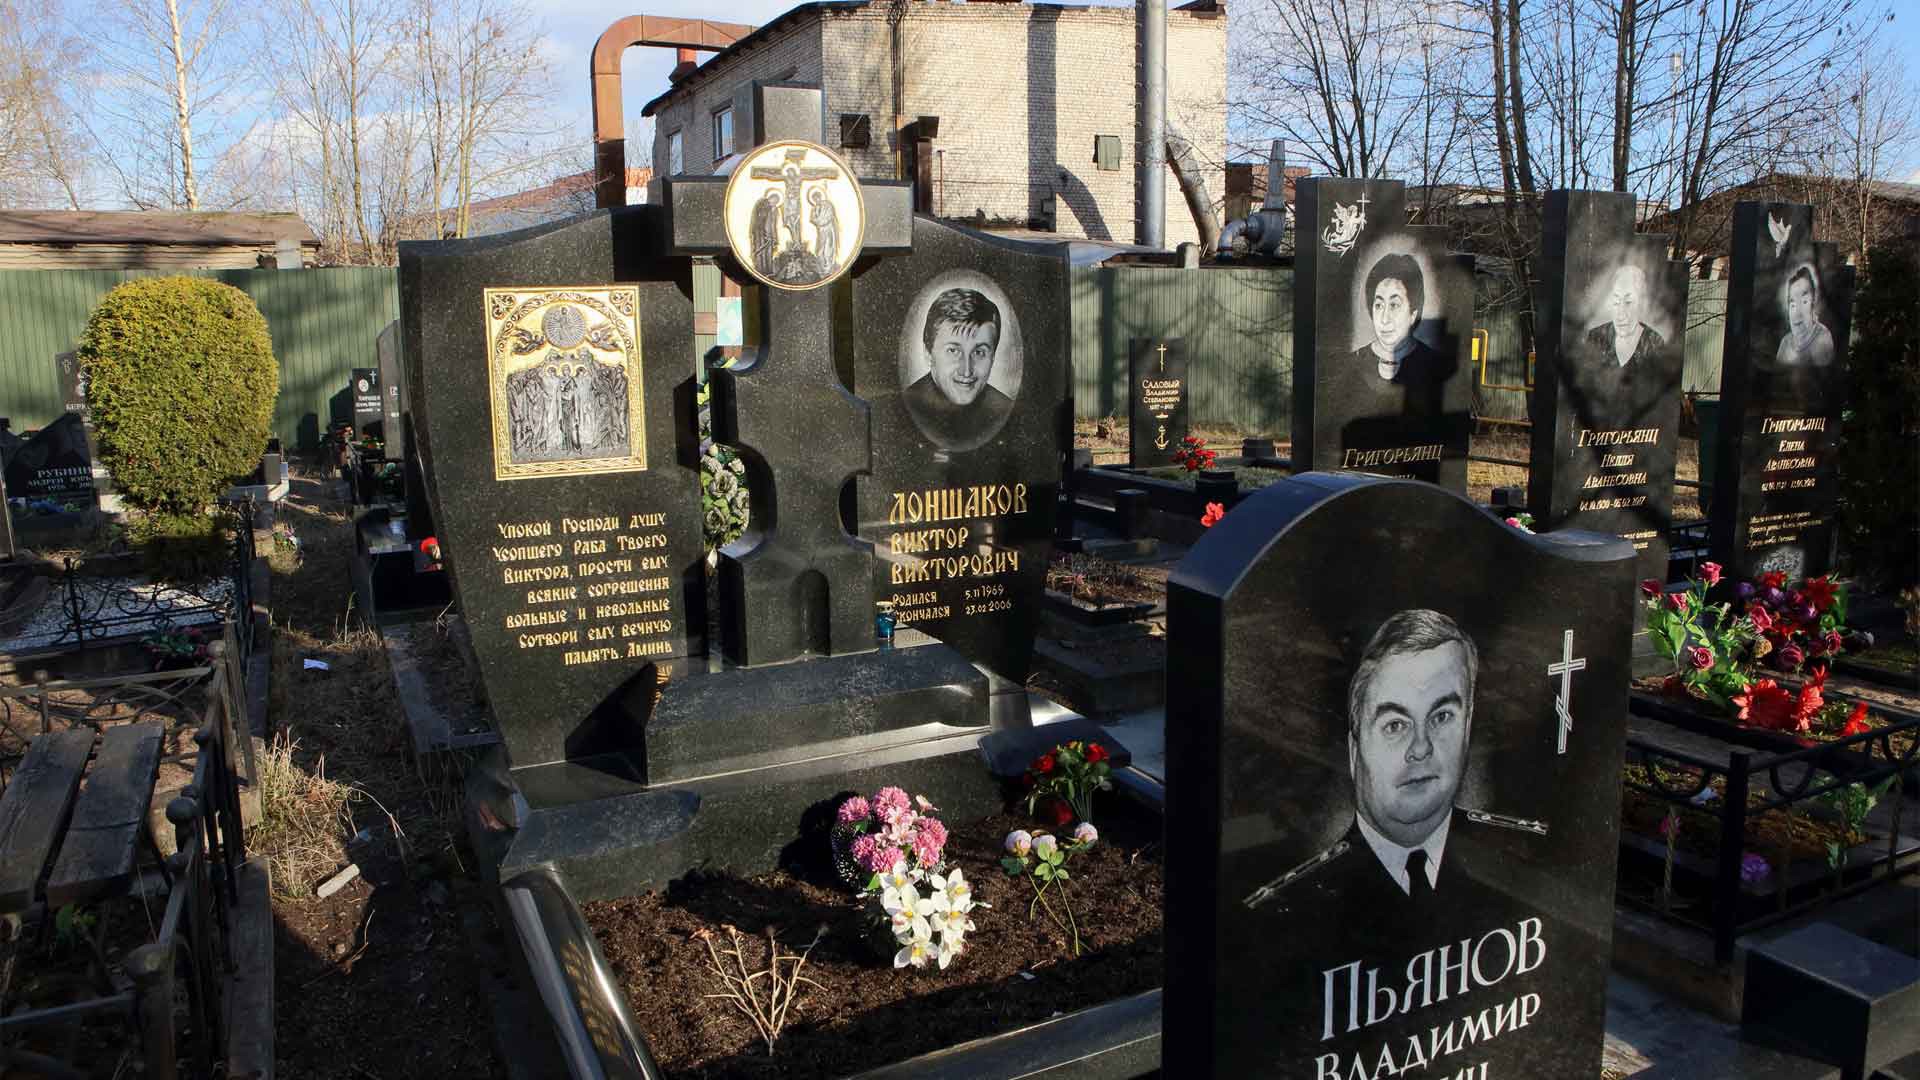 Dailystorm - В Заксобрании Санкт-Петербурга прокомментировали запрет местного санврача прощаться с покойными